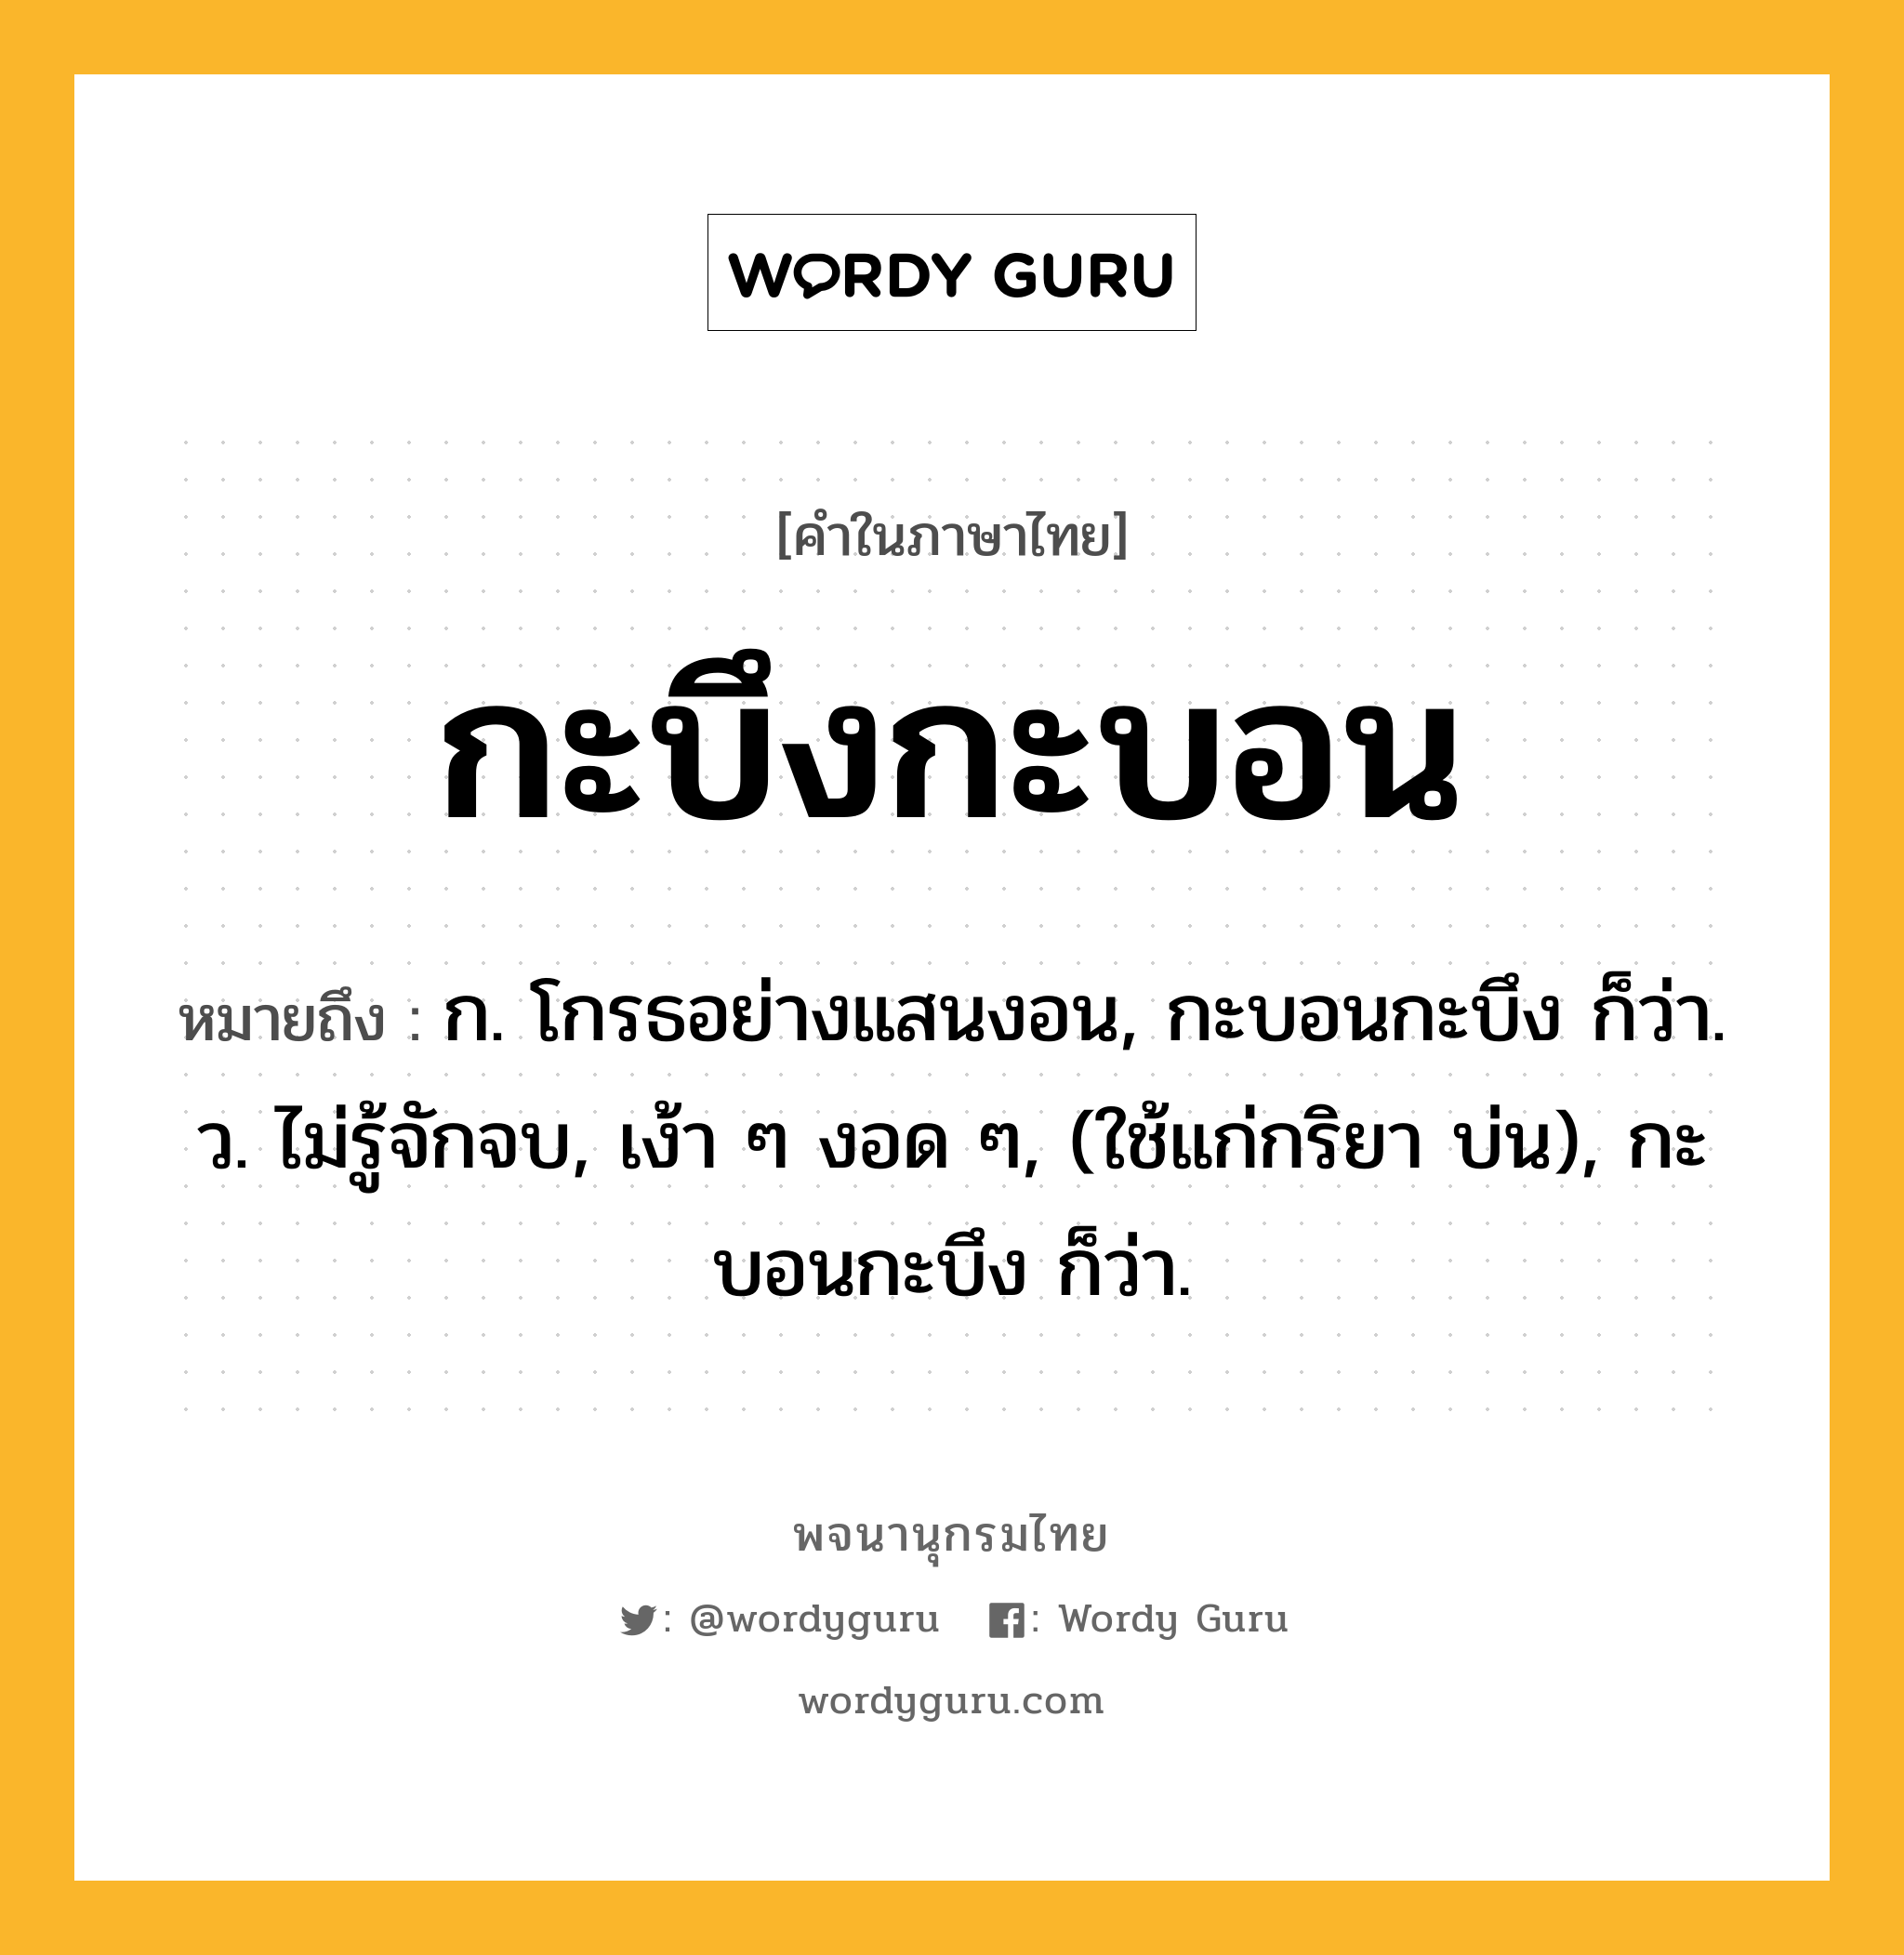 กะบึงกะบอน หมายถึงอะไร?, คำในภาษาไทย กะบึงกะบอน หมายถึง ก. โกรธอย่างแสนงอน, กะบอนกะบึง ก็ว่า. ว. ไม่รู้จักจบ, เง้า ๆ งอด ๆ, (ใช้แก่กริยา บ่น), กะบอนกะบึง ก็ว่า.